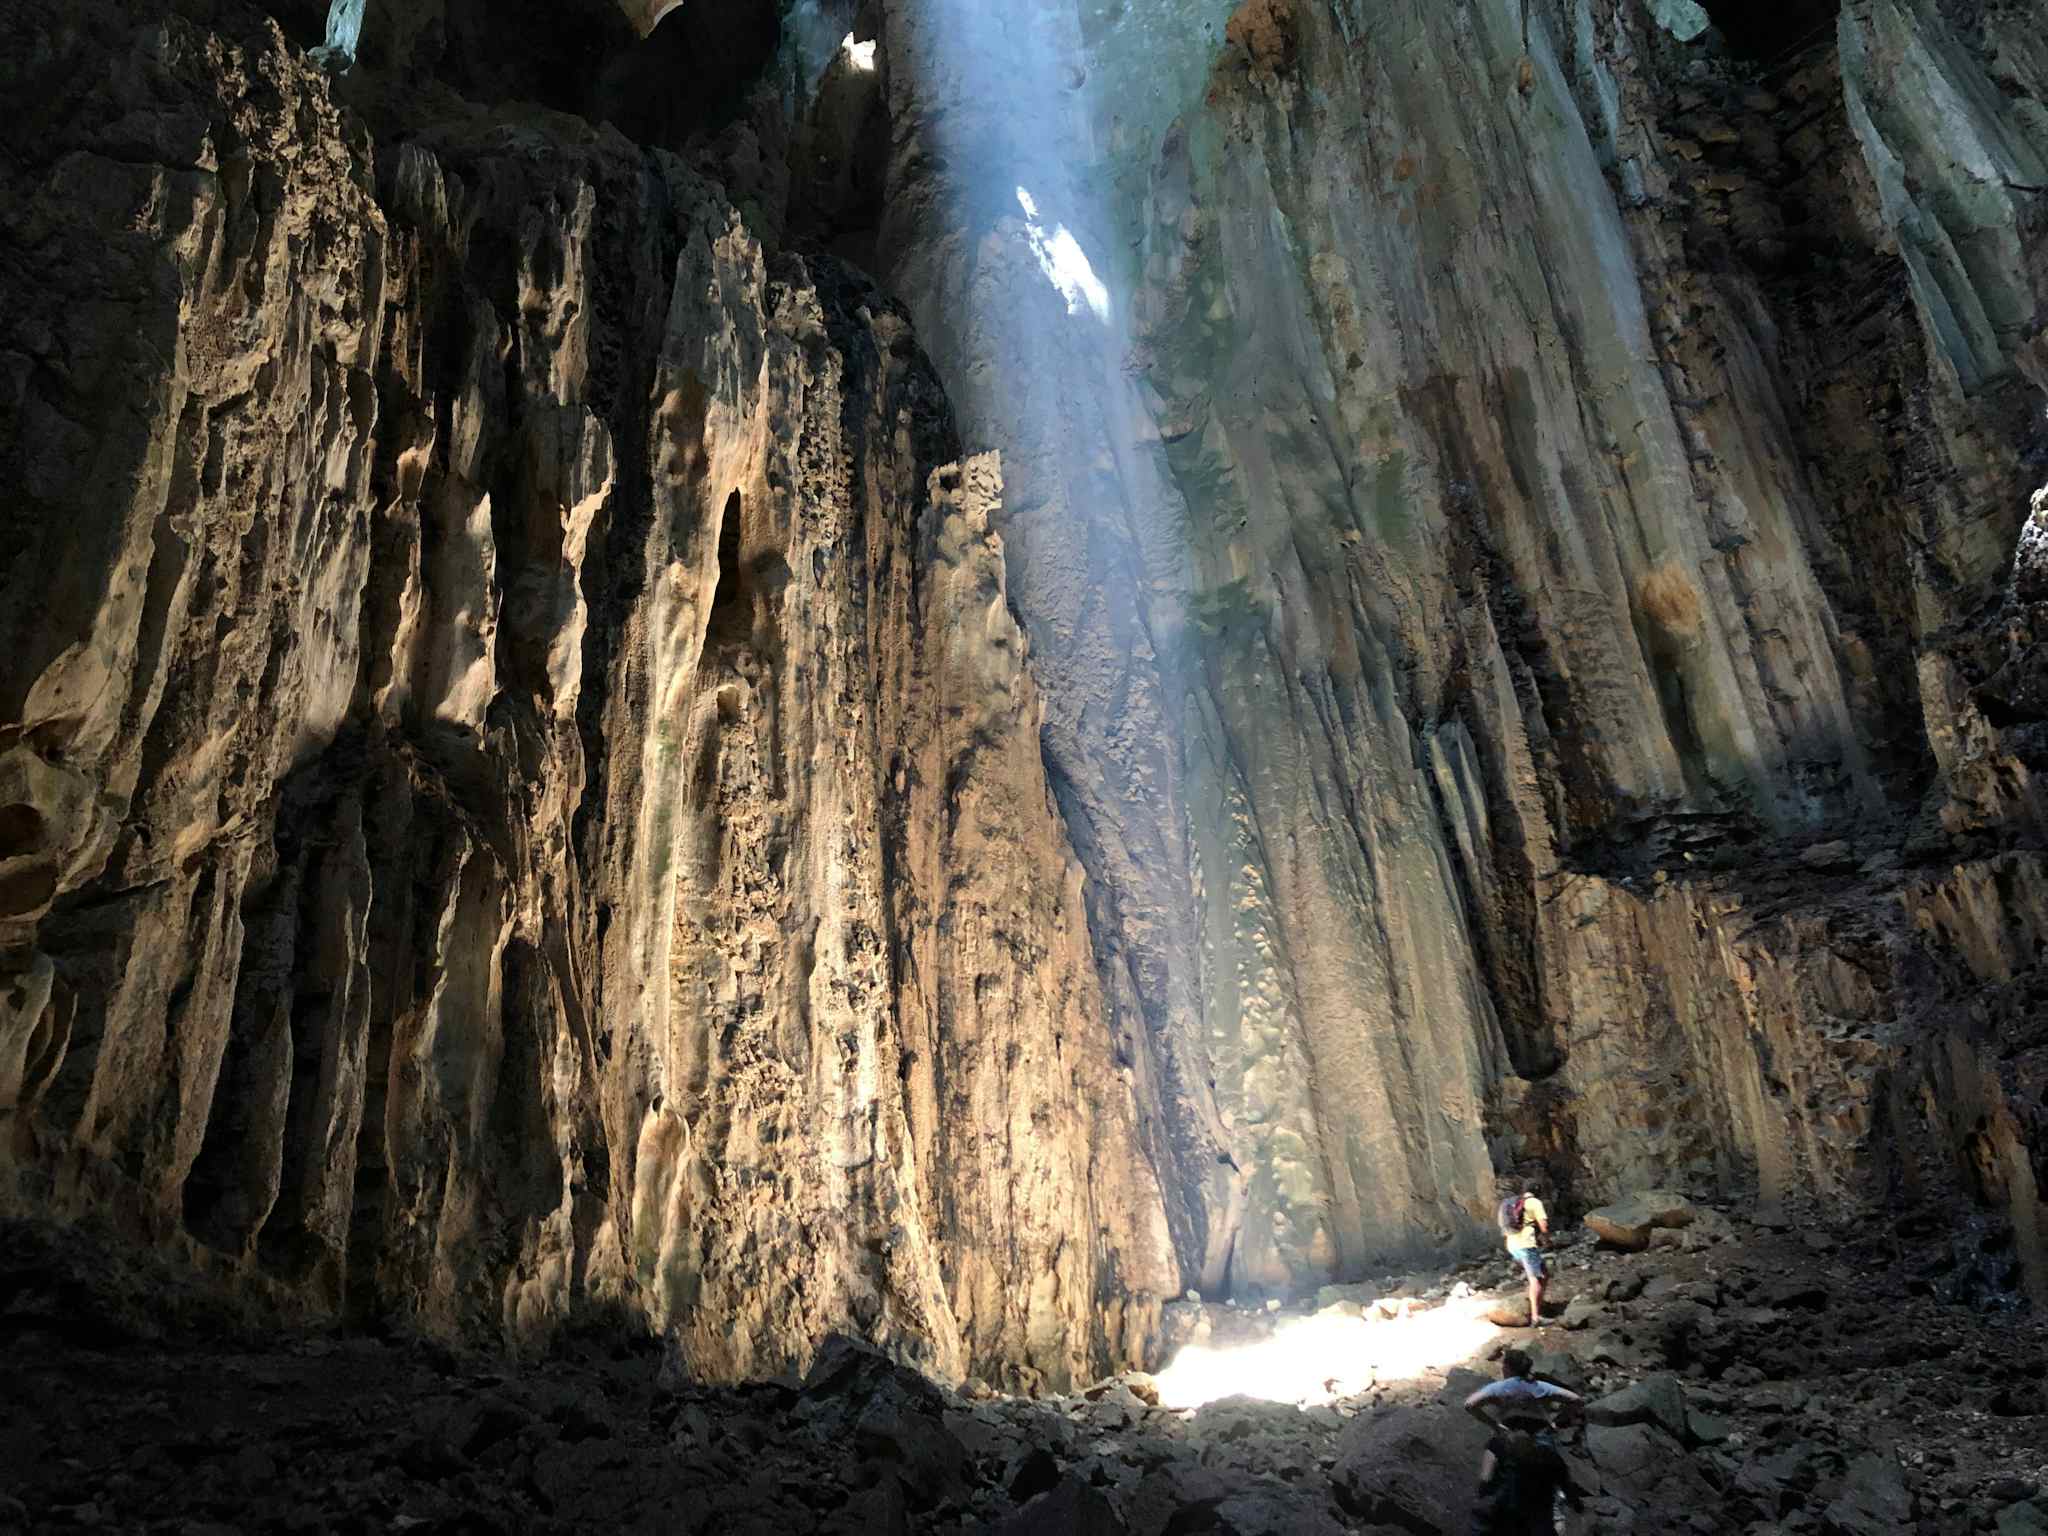 Jade Cave, Wildlife Adventure in the Jungles of Borneo